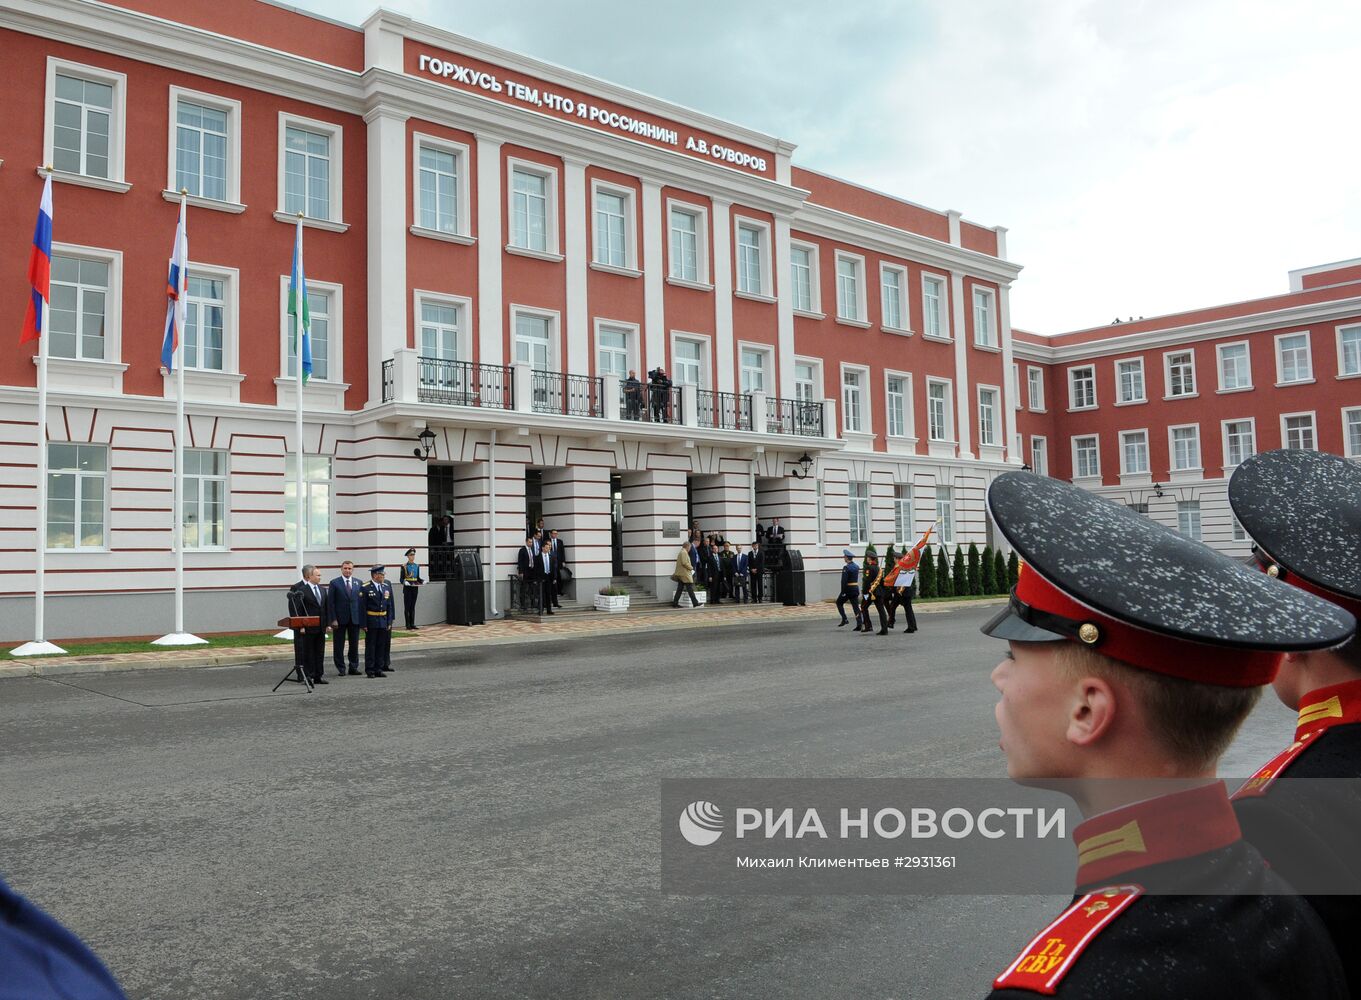 Рабочая поездка президента РФ В. Путина в Тульскую область